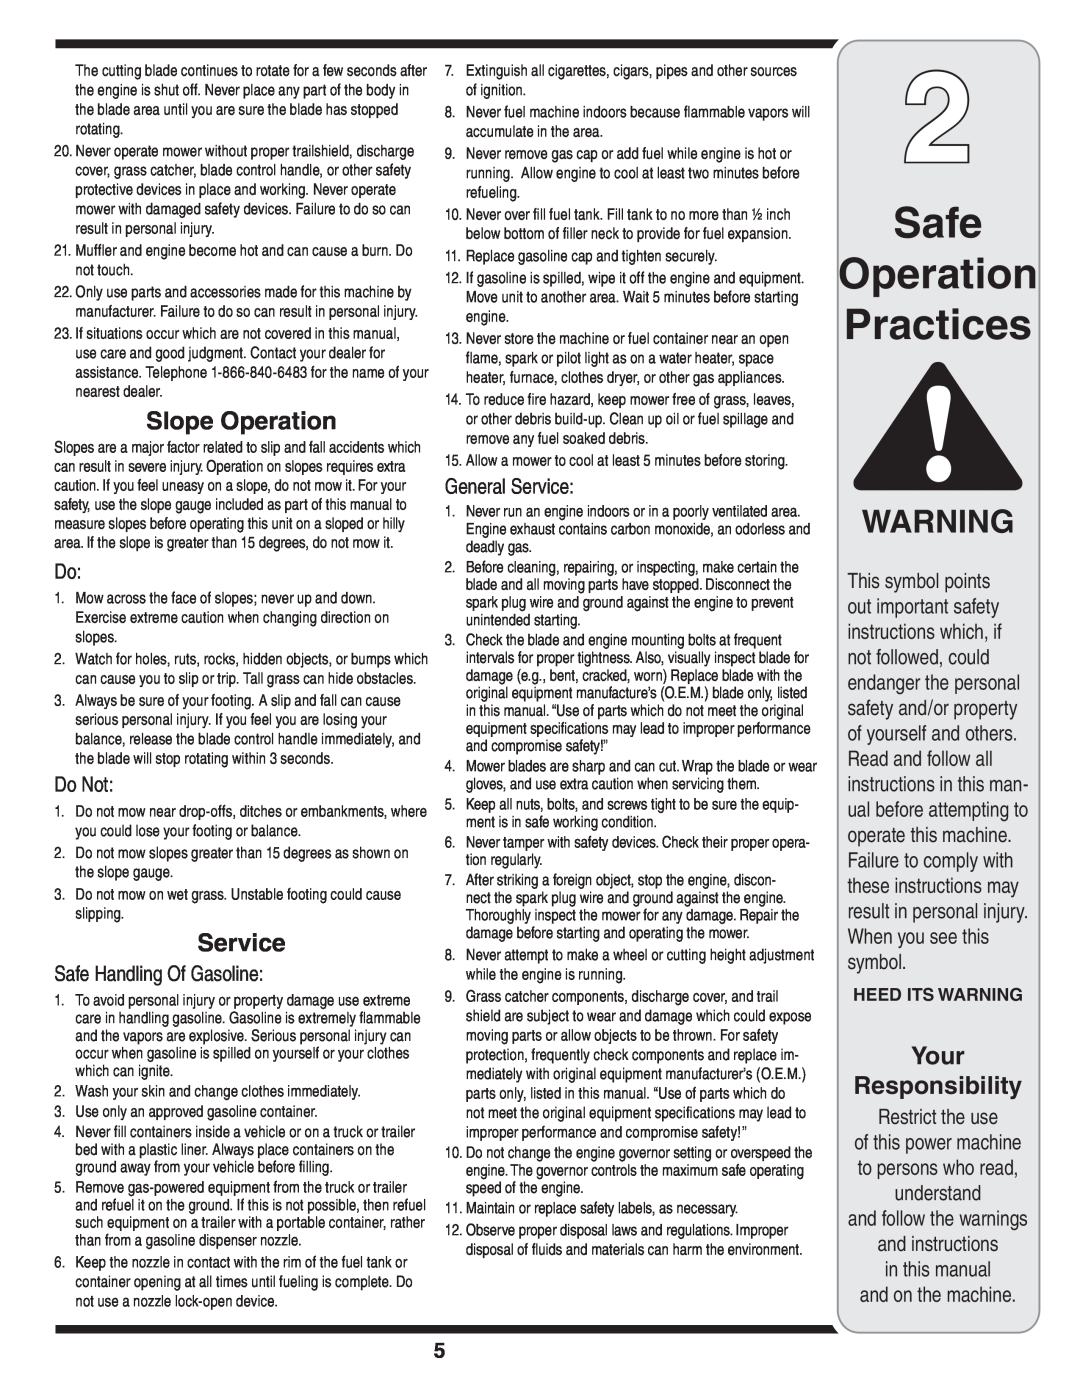 Troy-Bilt 569 warranty Safe Operation Practices, Slope Operation, Do Not, Safe Handling Of Gasoline, General Service 